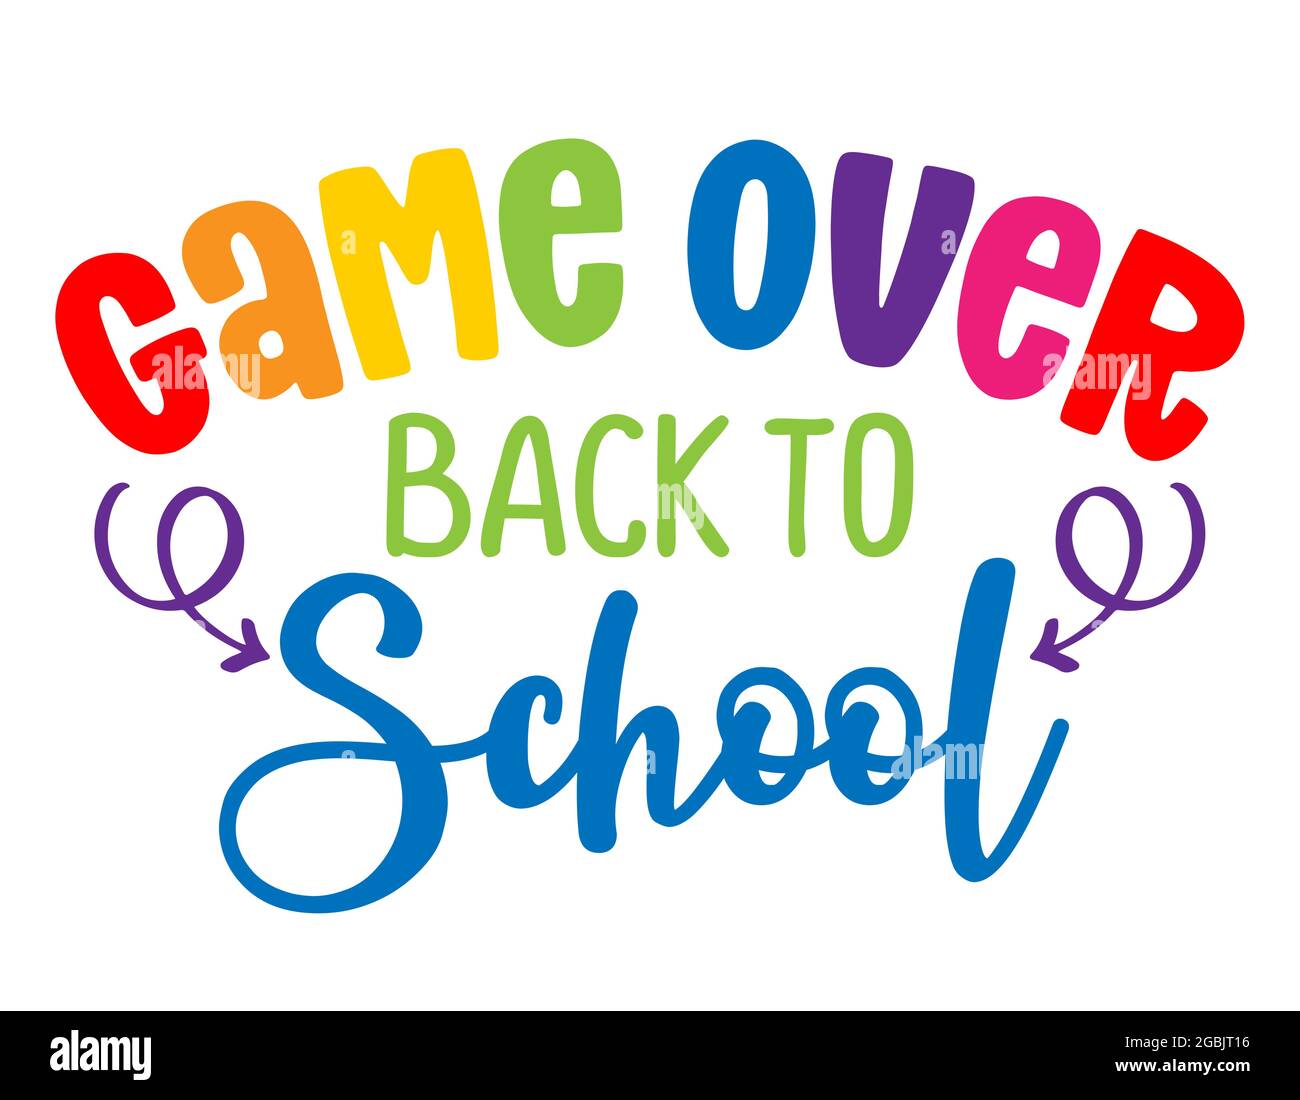 Game Over, Back to School - farbenfrohes Typografie-Design. Gut für Kleidung, Geschenksets, Fotos oder Motivationsplakate. Stock Vektor